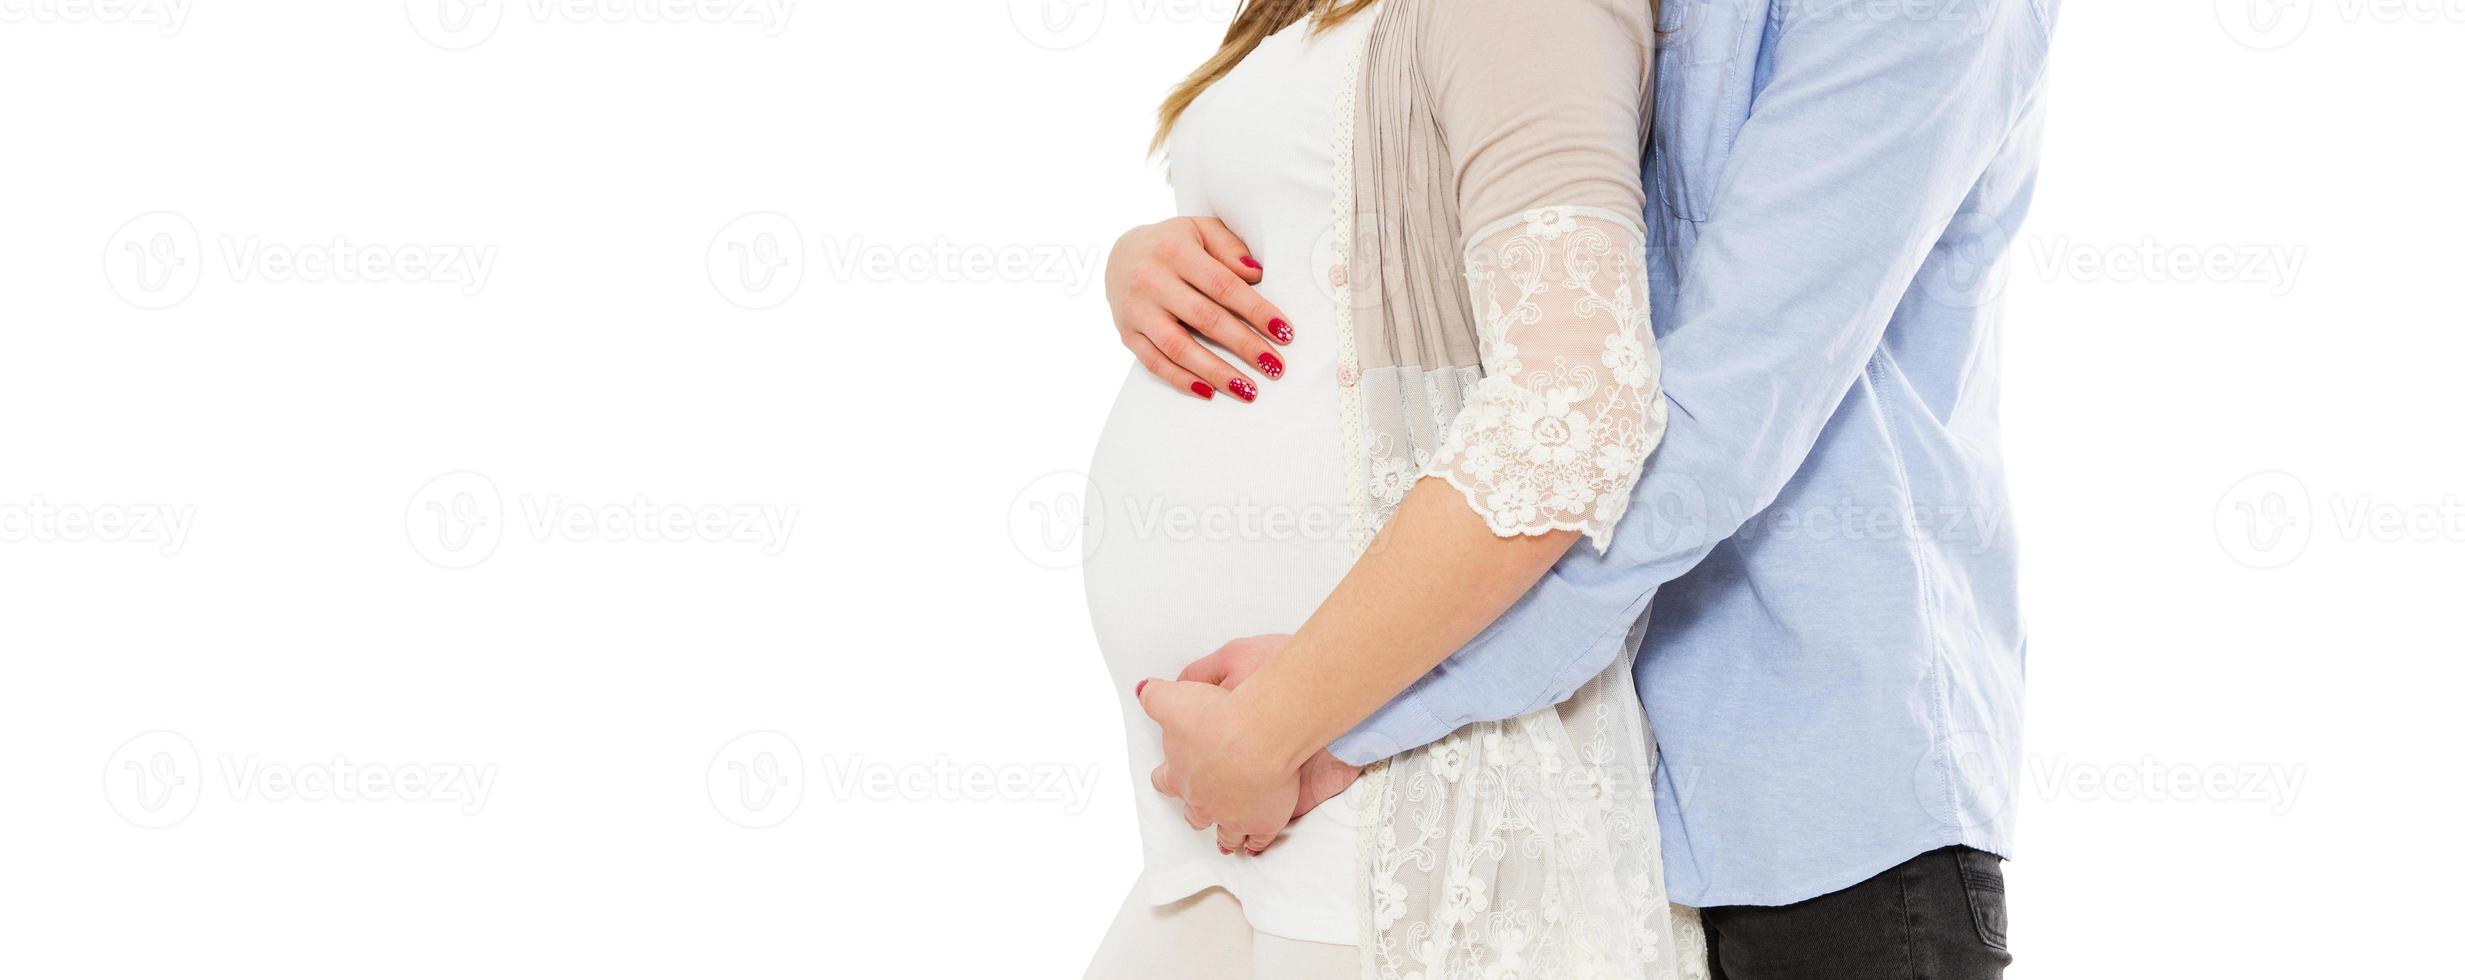 concepto de embarazo, esperando un bebé, amor, cuidado - imagen recortada de la joven embarazada y su marido foto